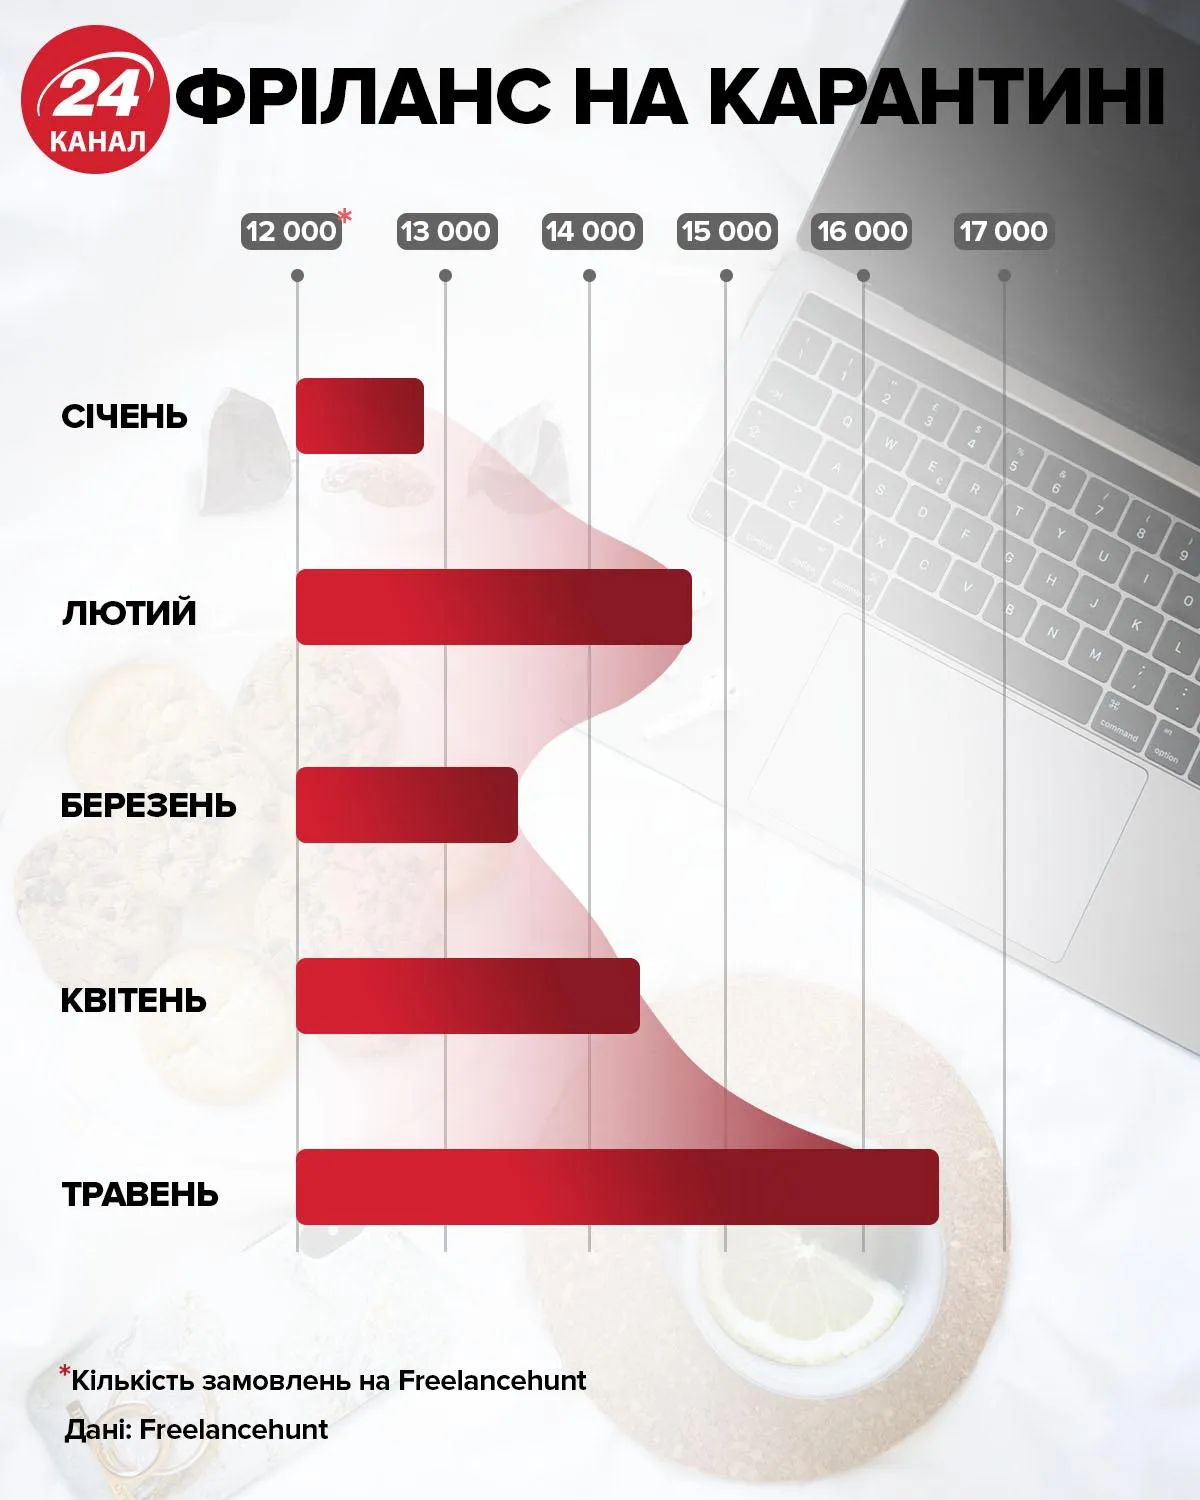 Фріланс в Україні як змінився інфографіка 24 каналу